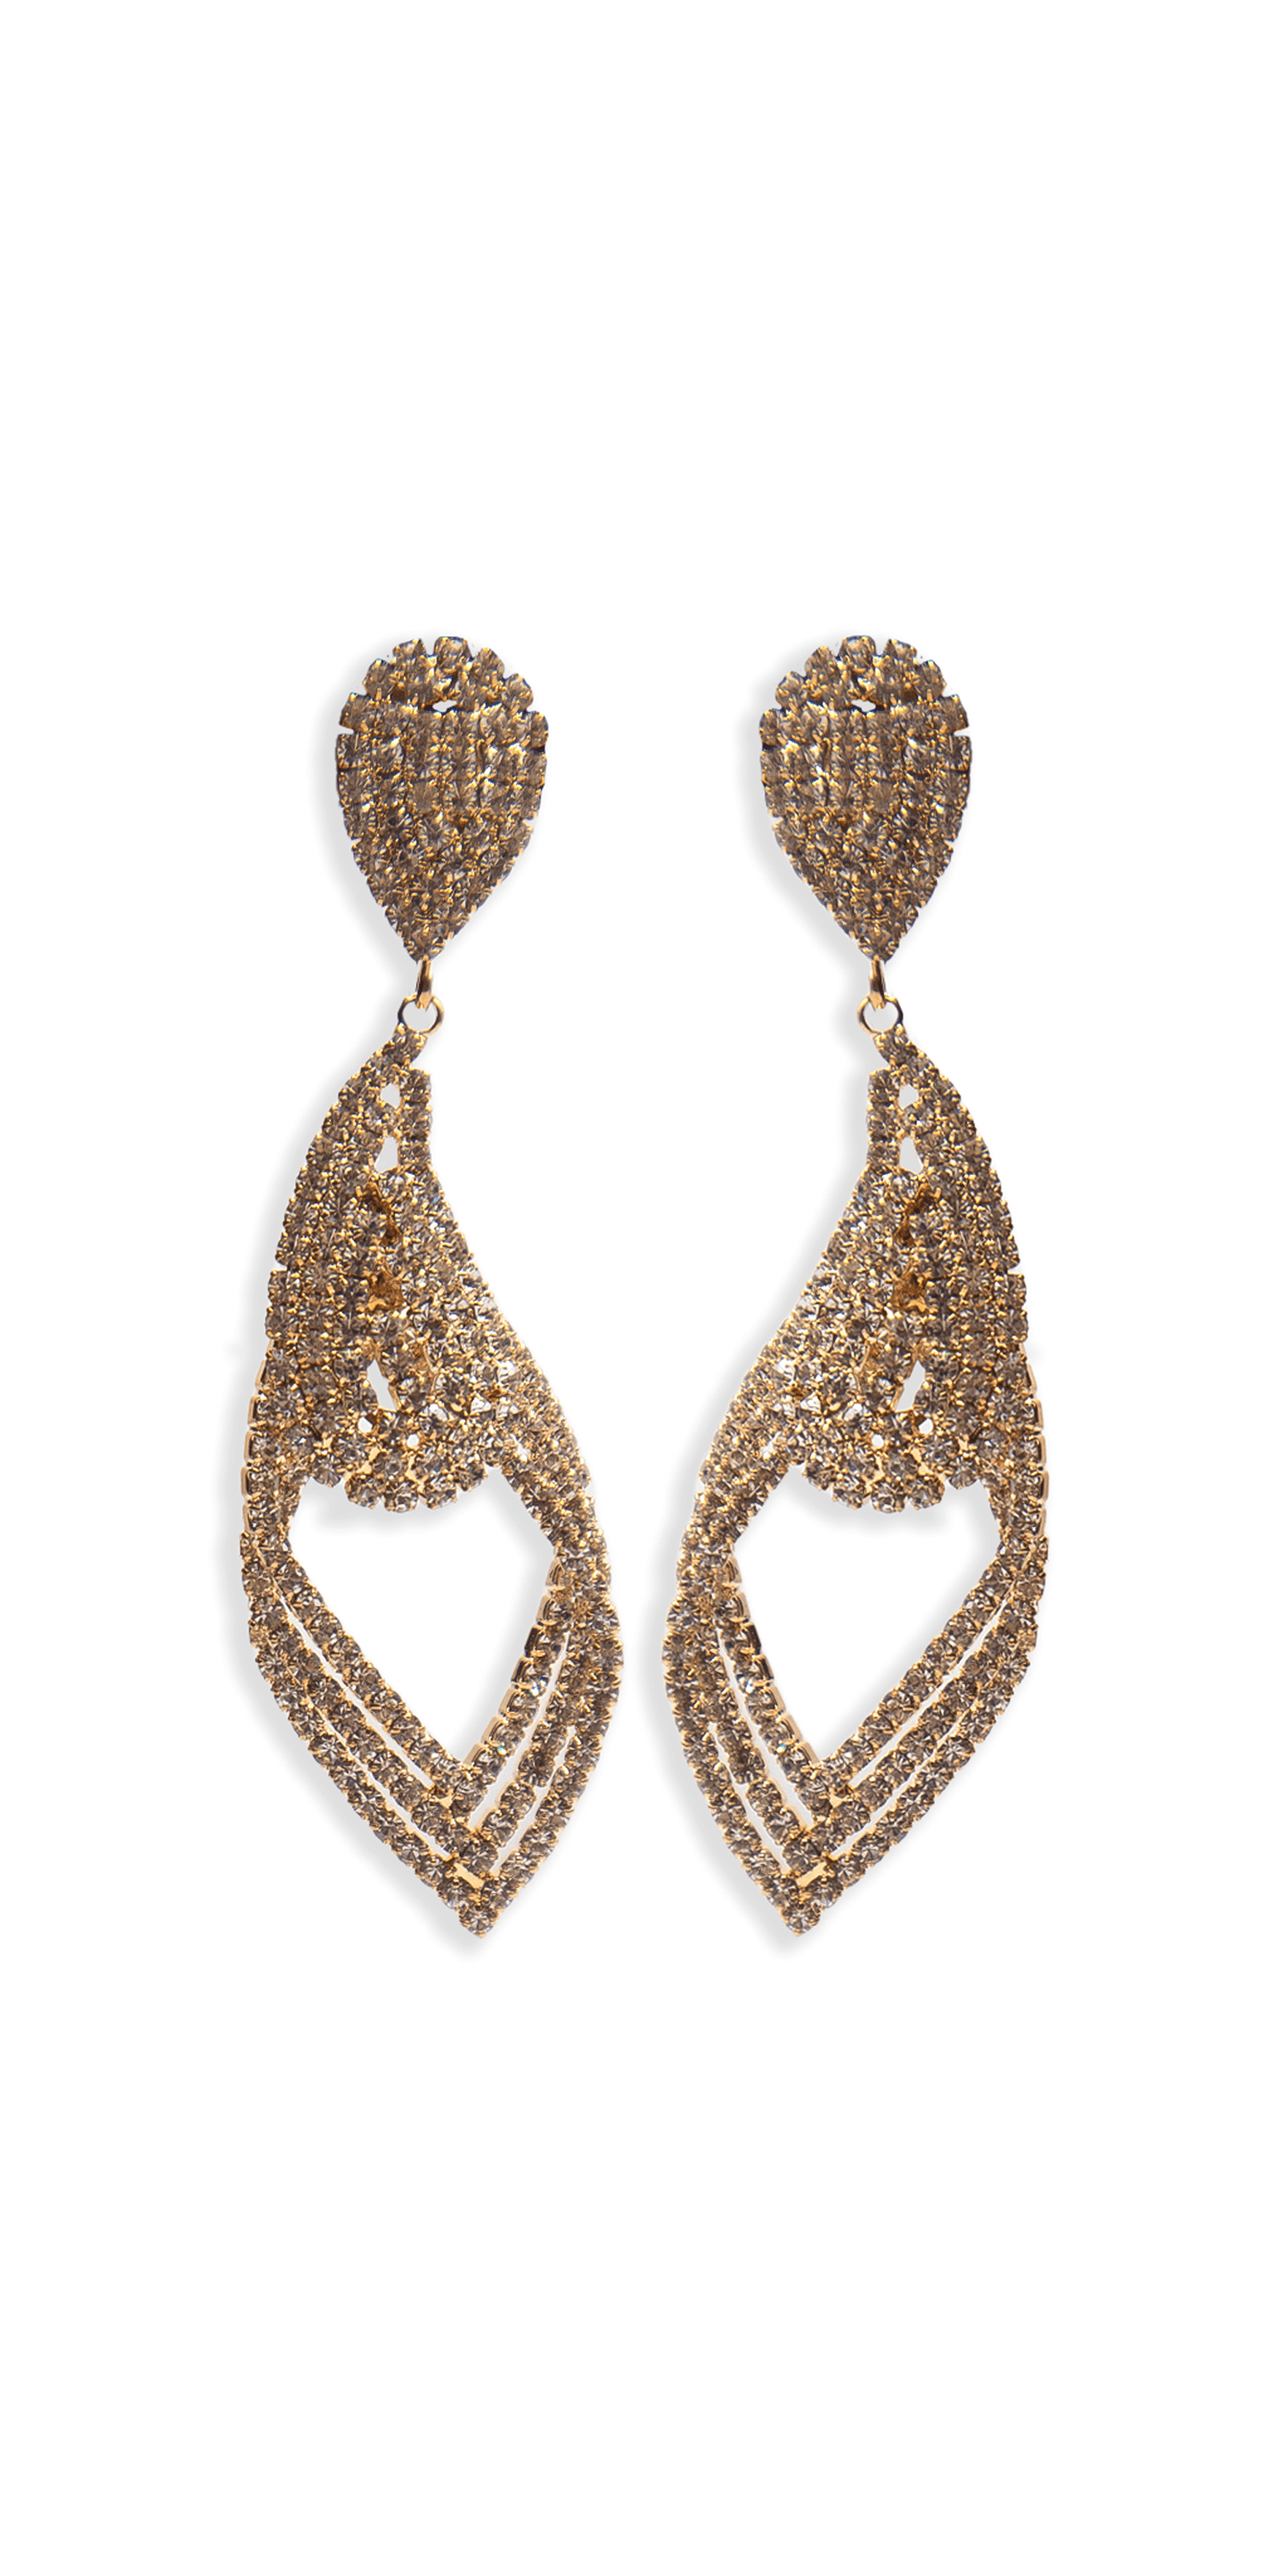 Camille La Vie Rhinestone Filigree Teardrop Earrings OS / gold